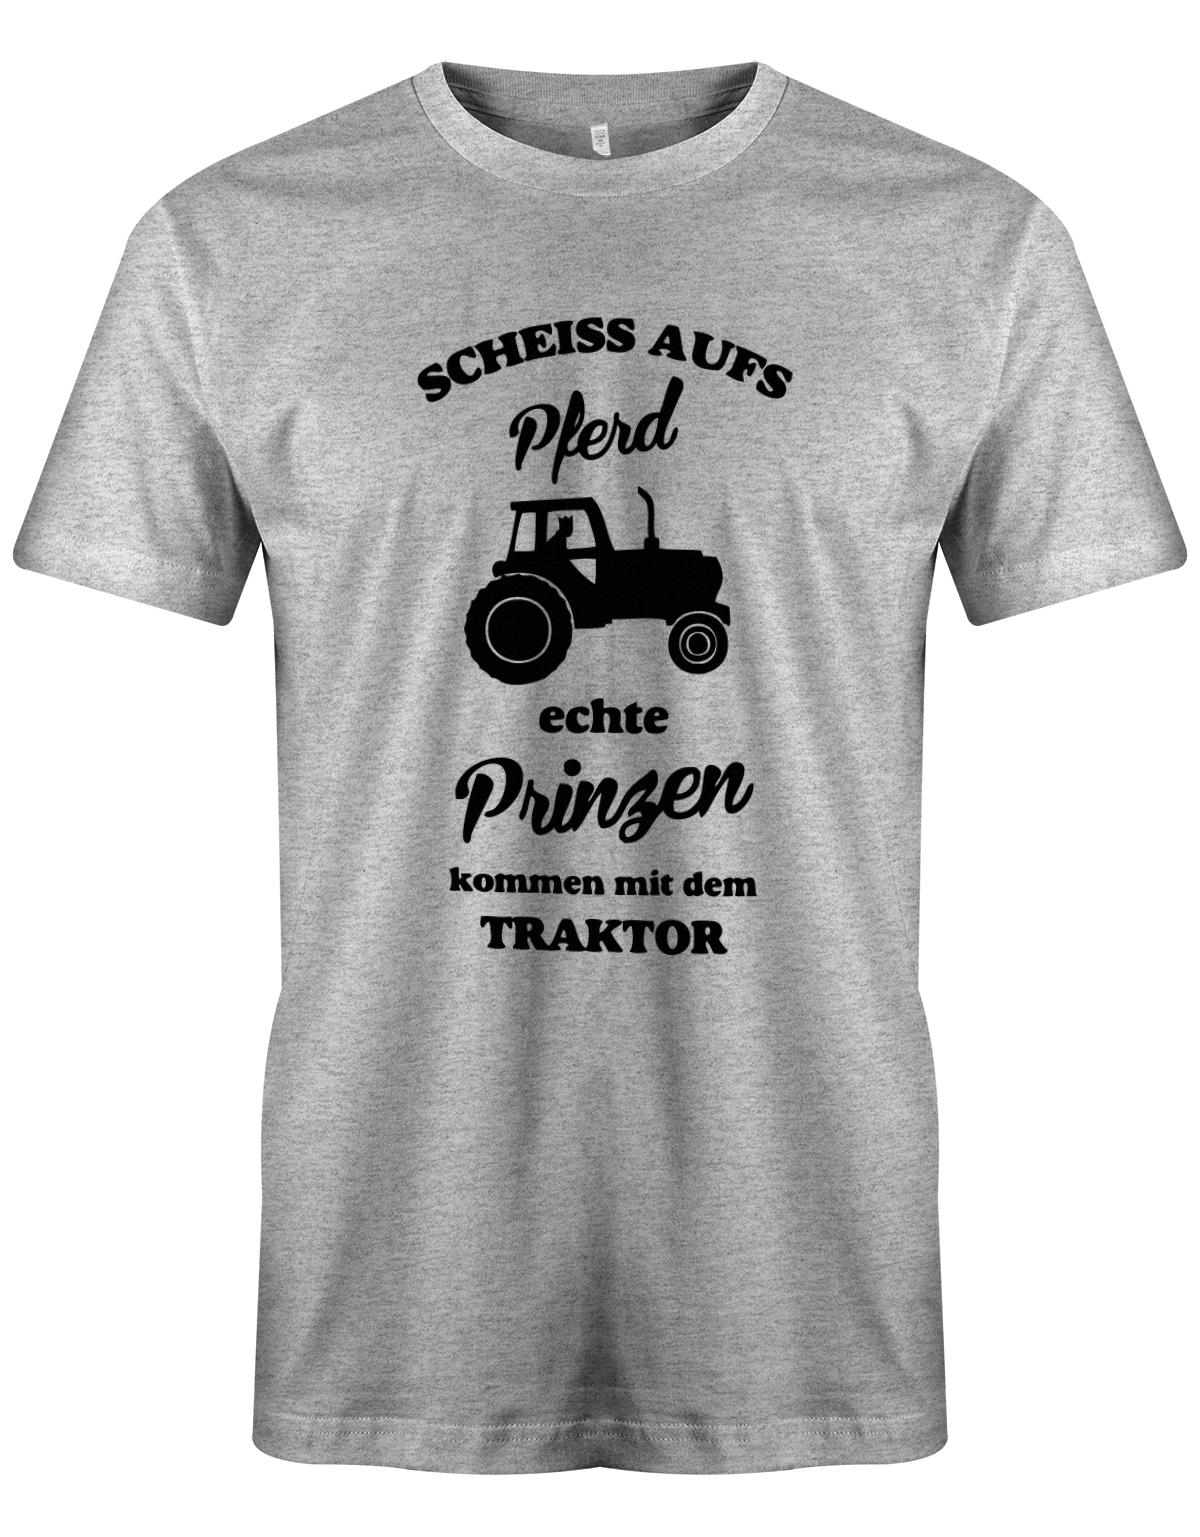 Landwirtschaft Shirt Männer - Scheiss aufs Pferd, echte Prinzen kommen mit dem Traktor.  Grau